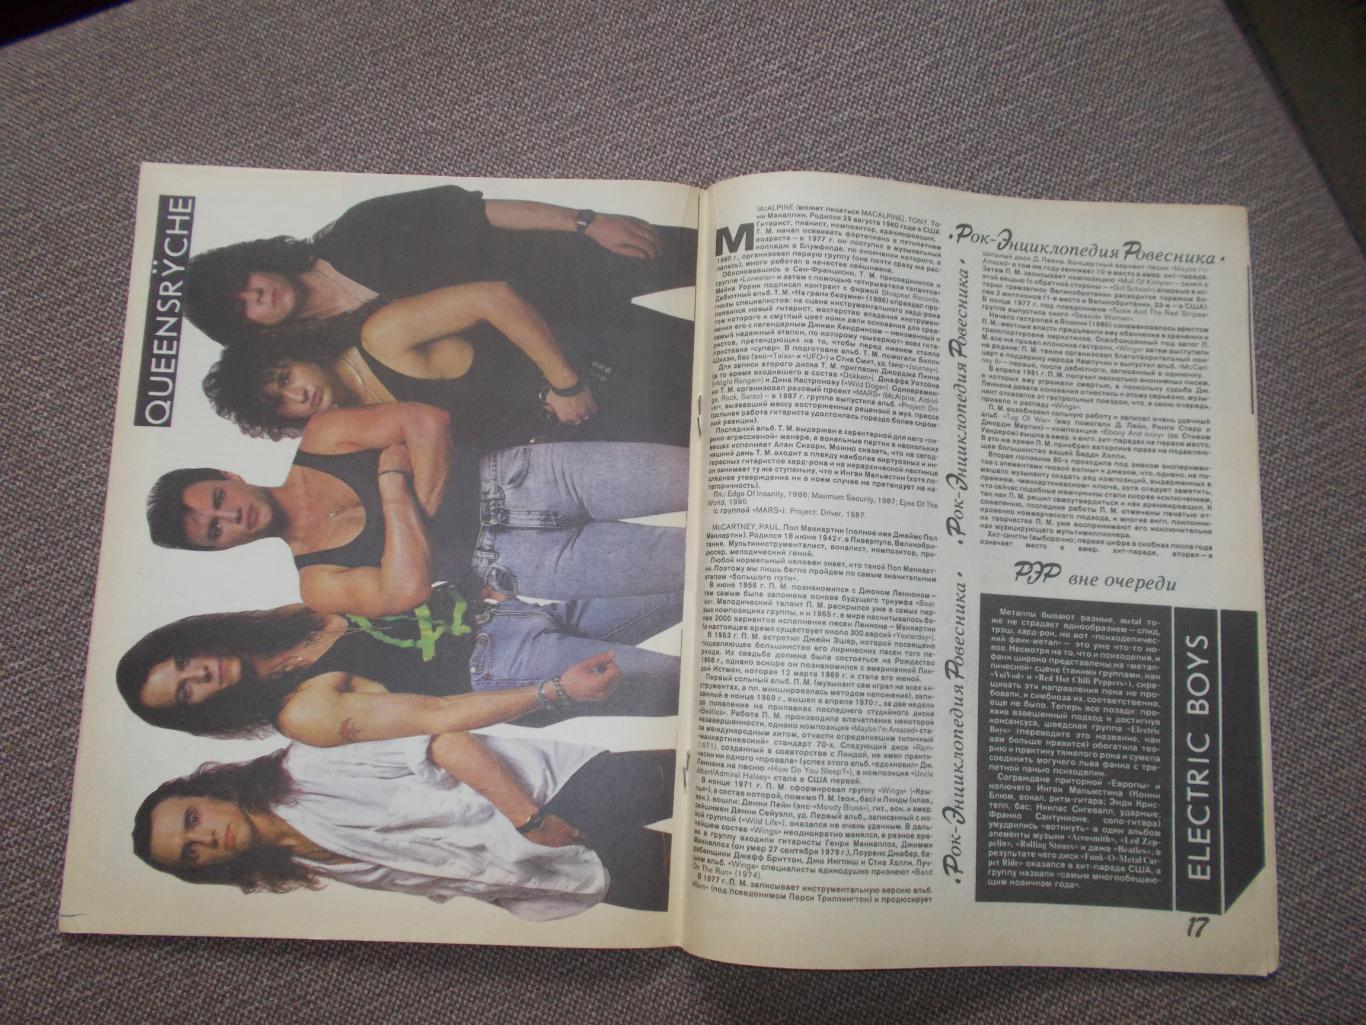 Журнал СССР :Ровесник№ 8 (август) 1991 г. (Молодежный музыкальный журнал) 6